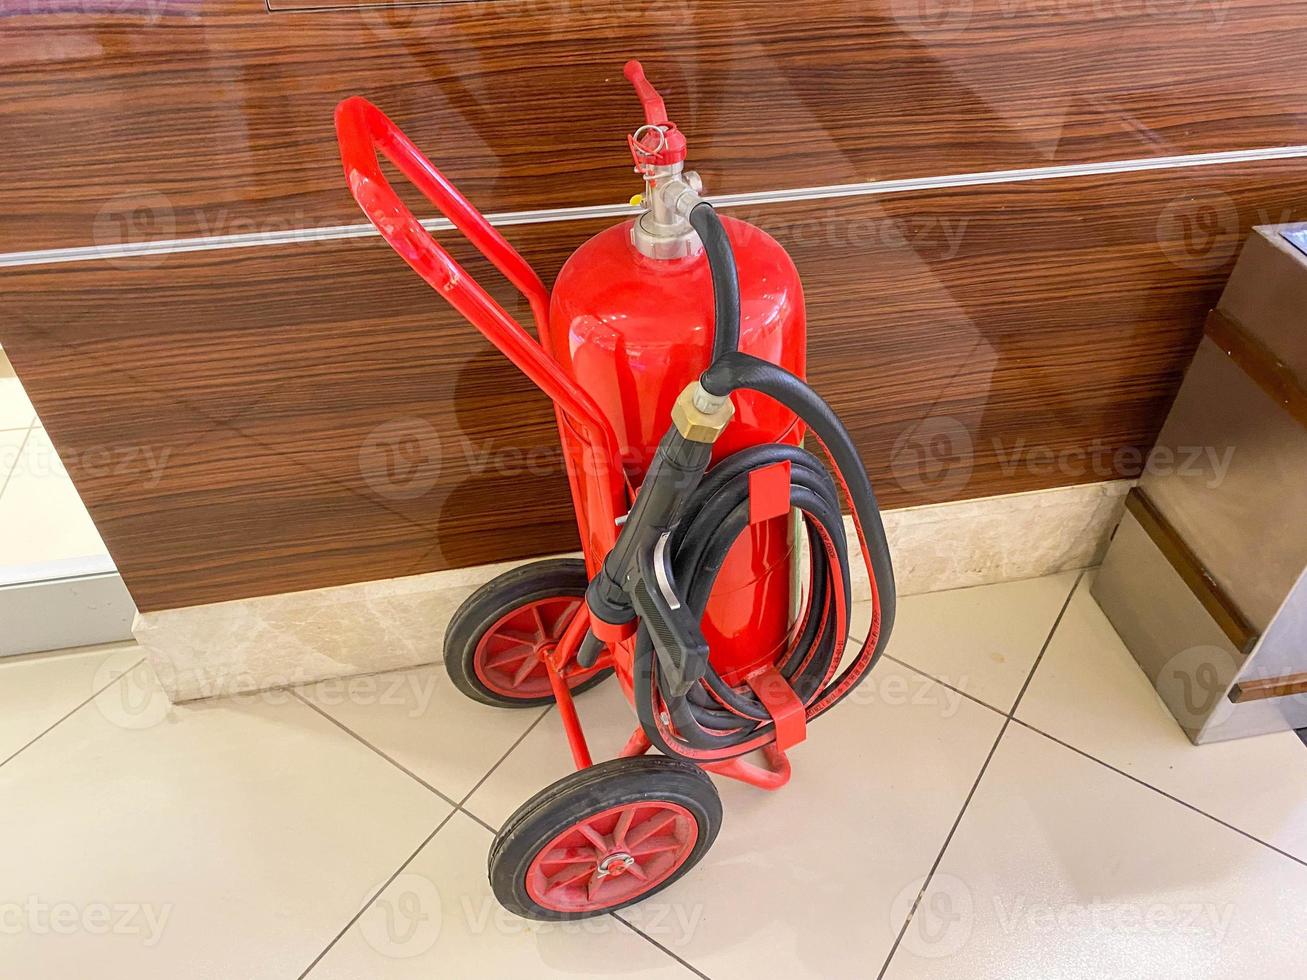 un grand extincteur mobile en fer rouge avec un tuyau sur roues pour éteindre les incendies photo